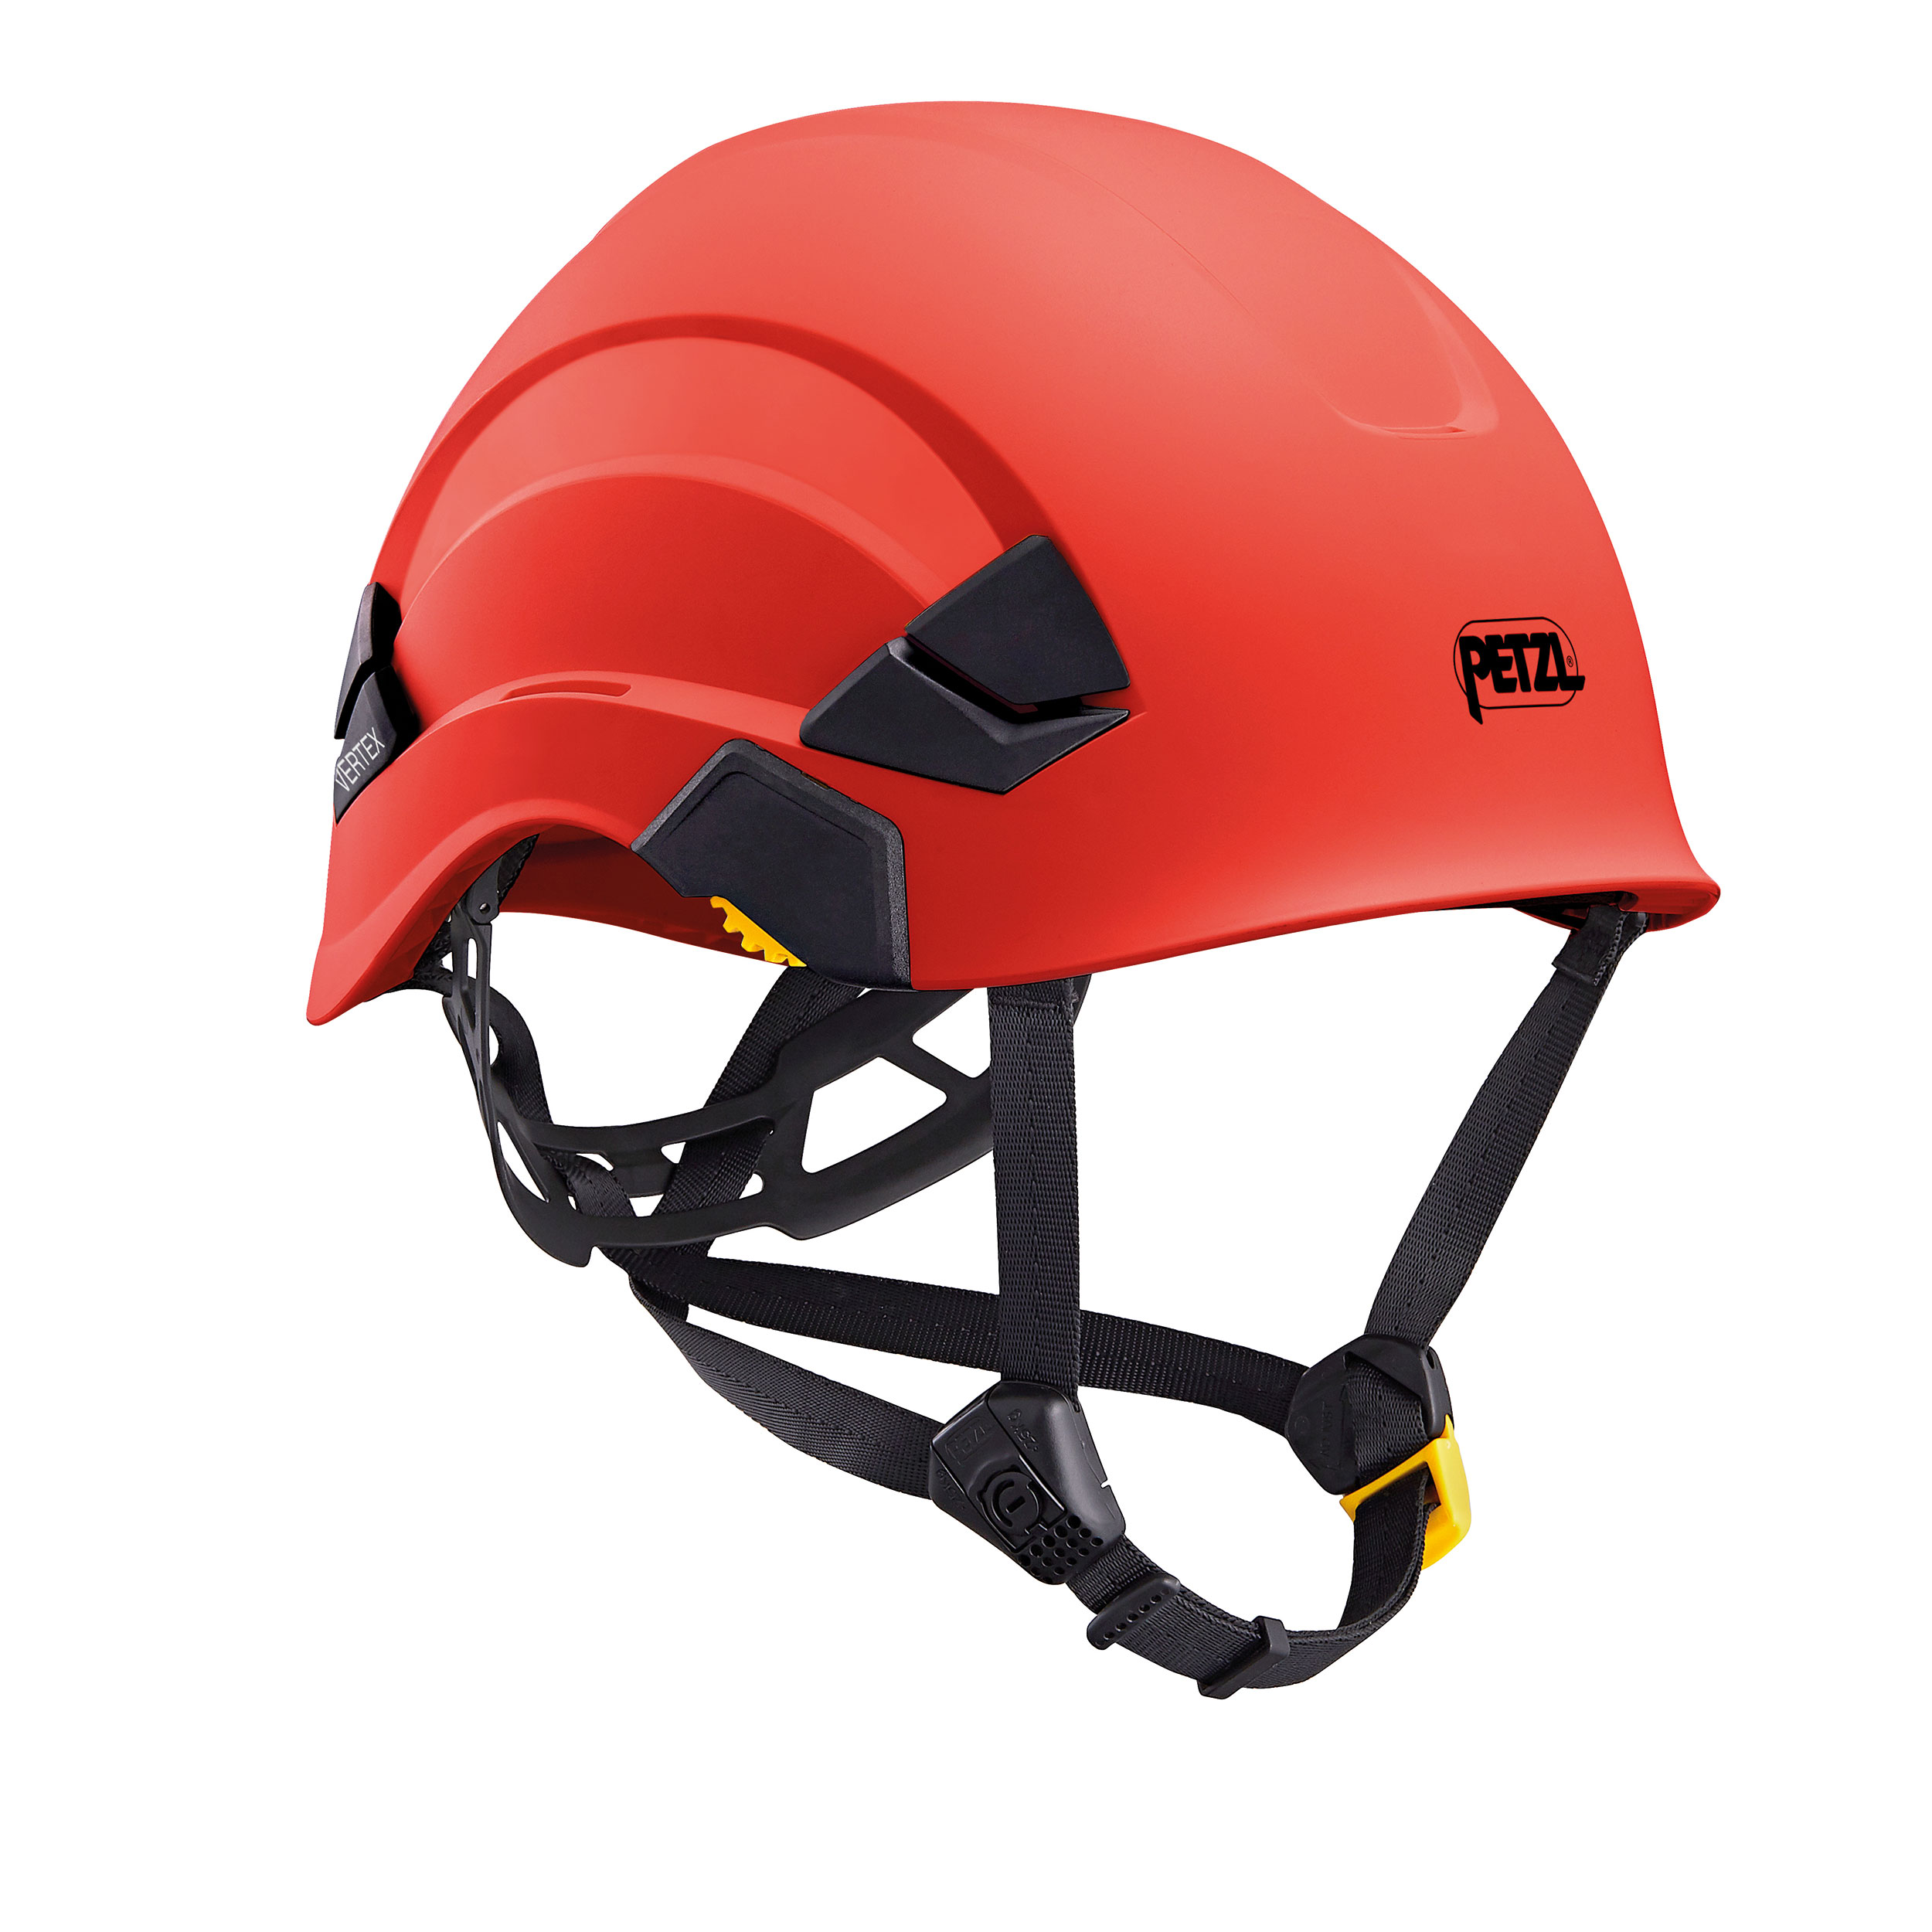 Helm Petzl Vertex rood A010 